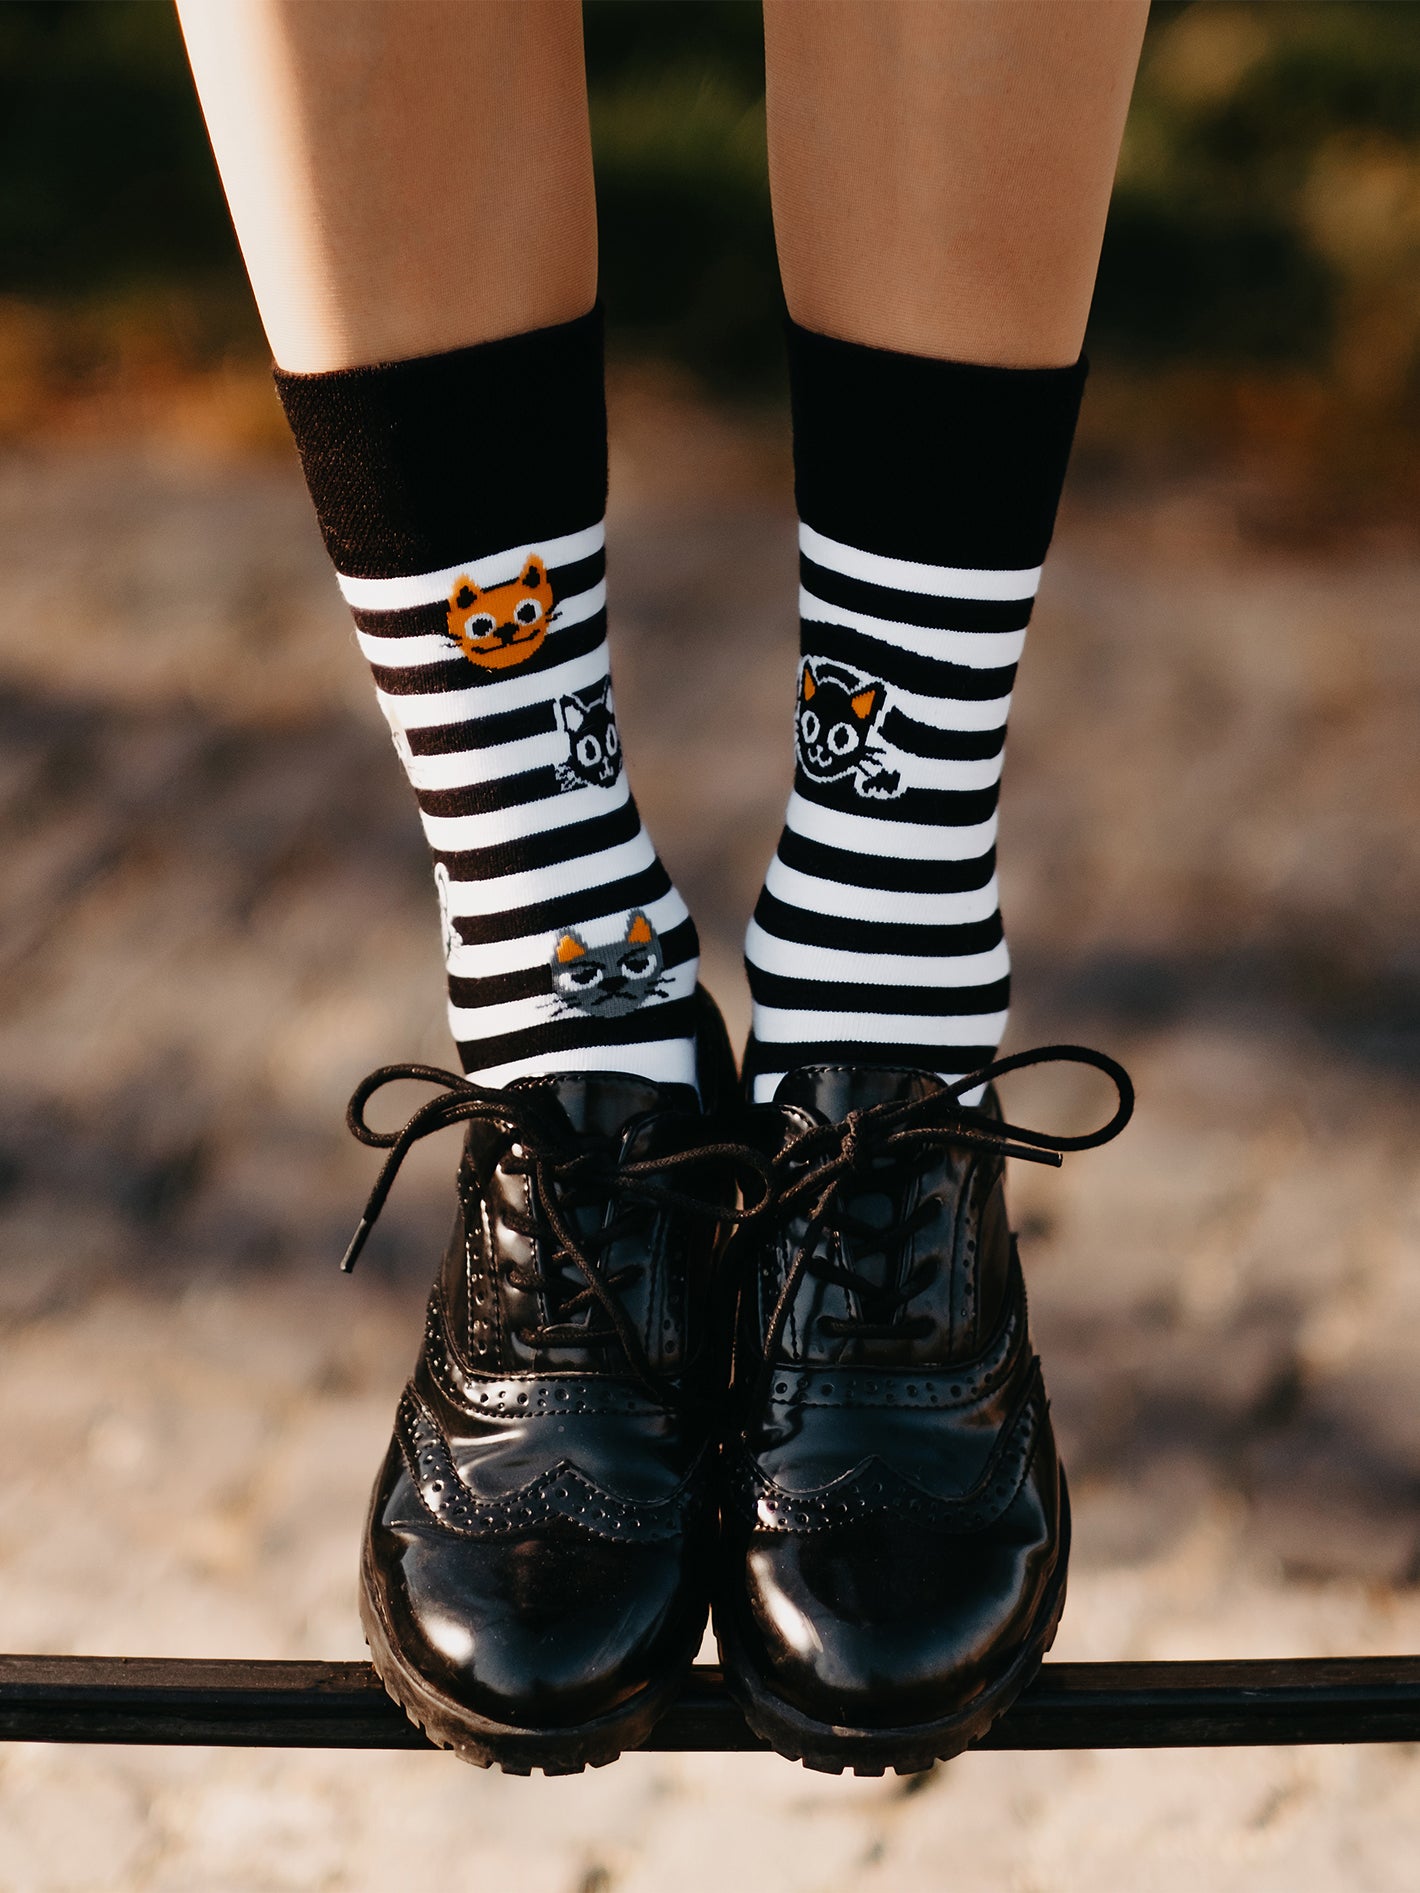 Regular Socks Cats & Stripes